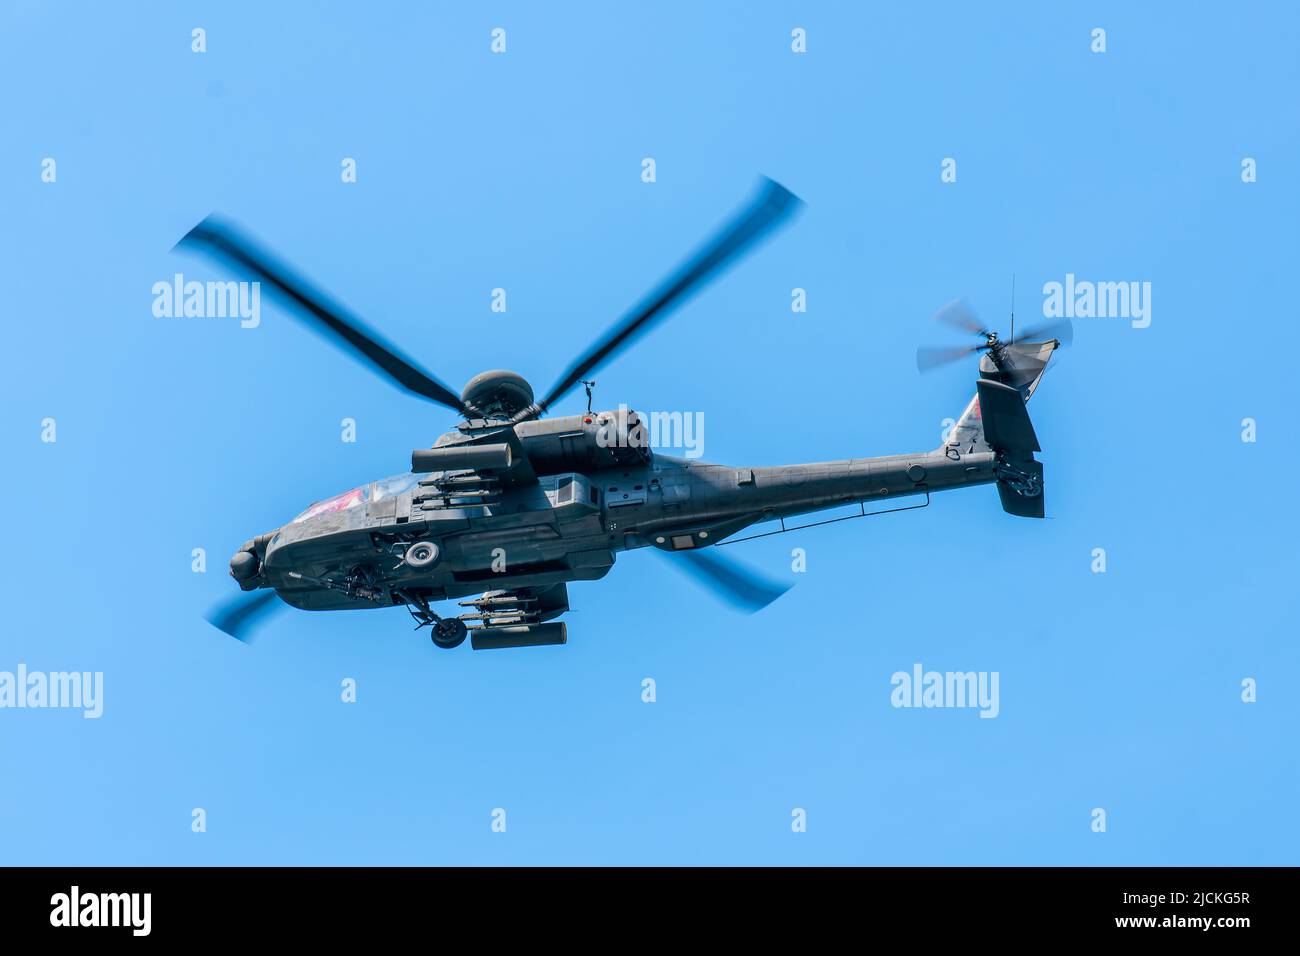 Singapur, Singapur - 11. Aug 2018: HE AH-64D Apache ist ein Multi-Mission-Hubschrauber, der entwickelt wurde, um bei Tag, Nacht und widrigen Wetterbedingungen zu kämpfen und zu überleben Stockfoto